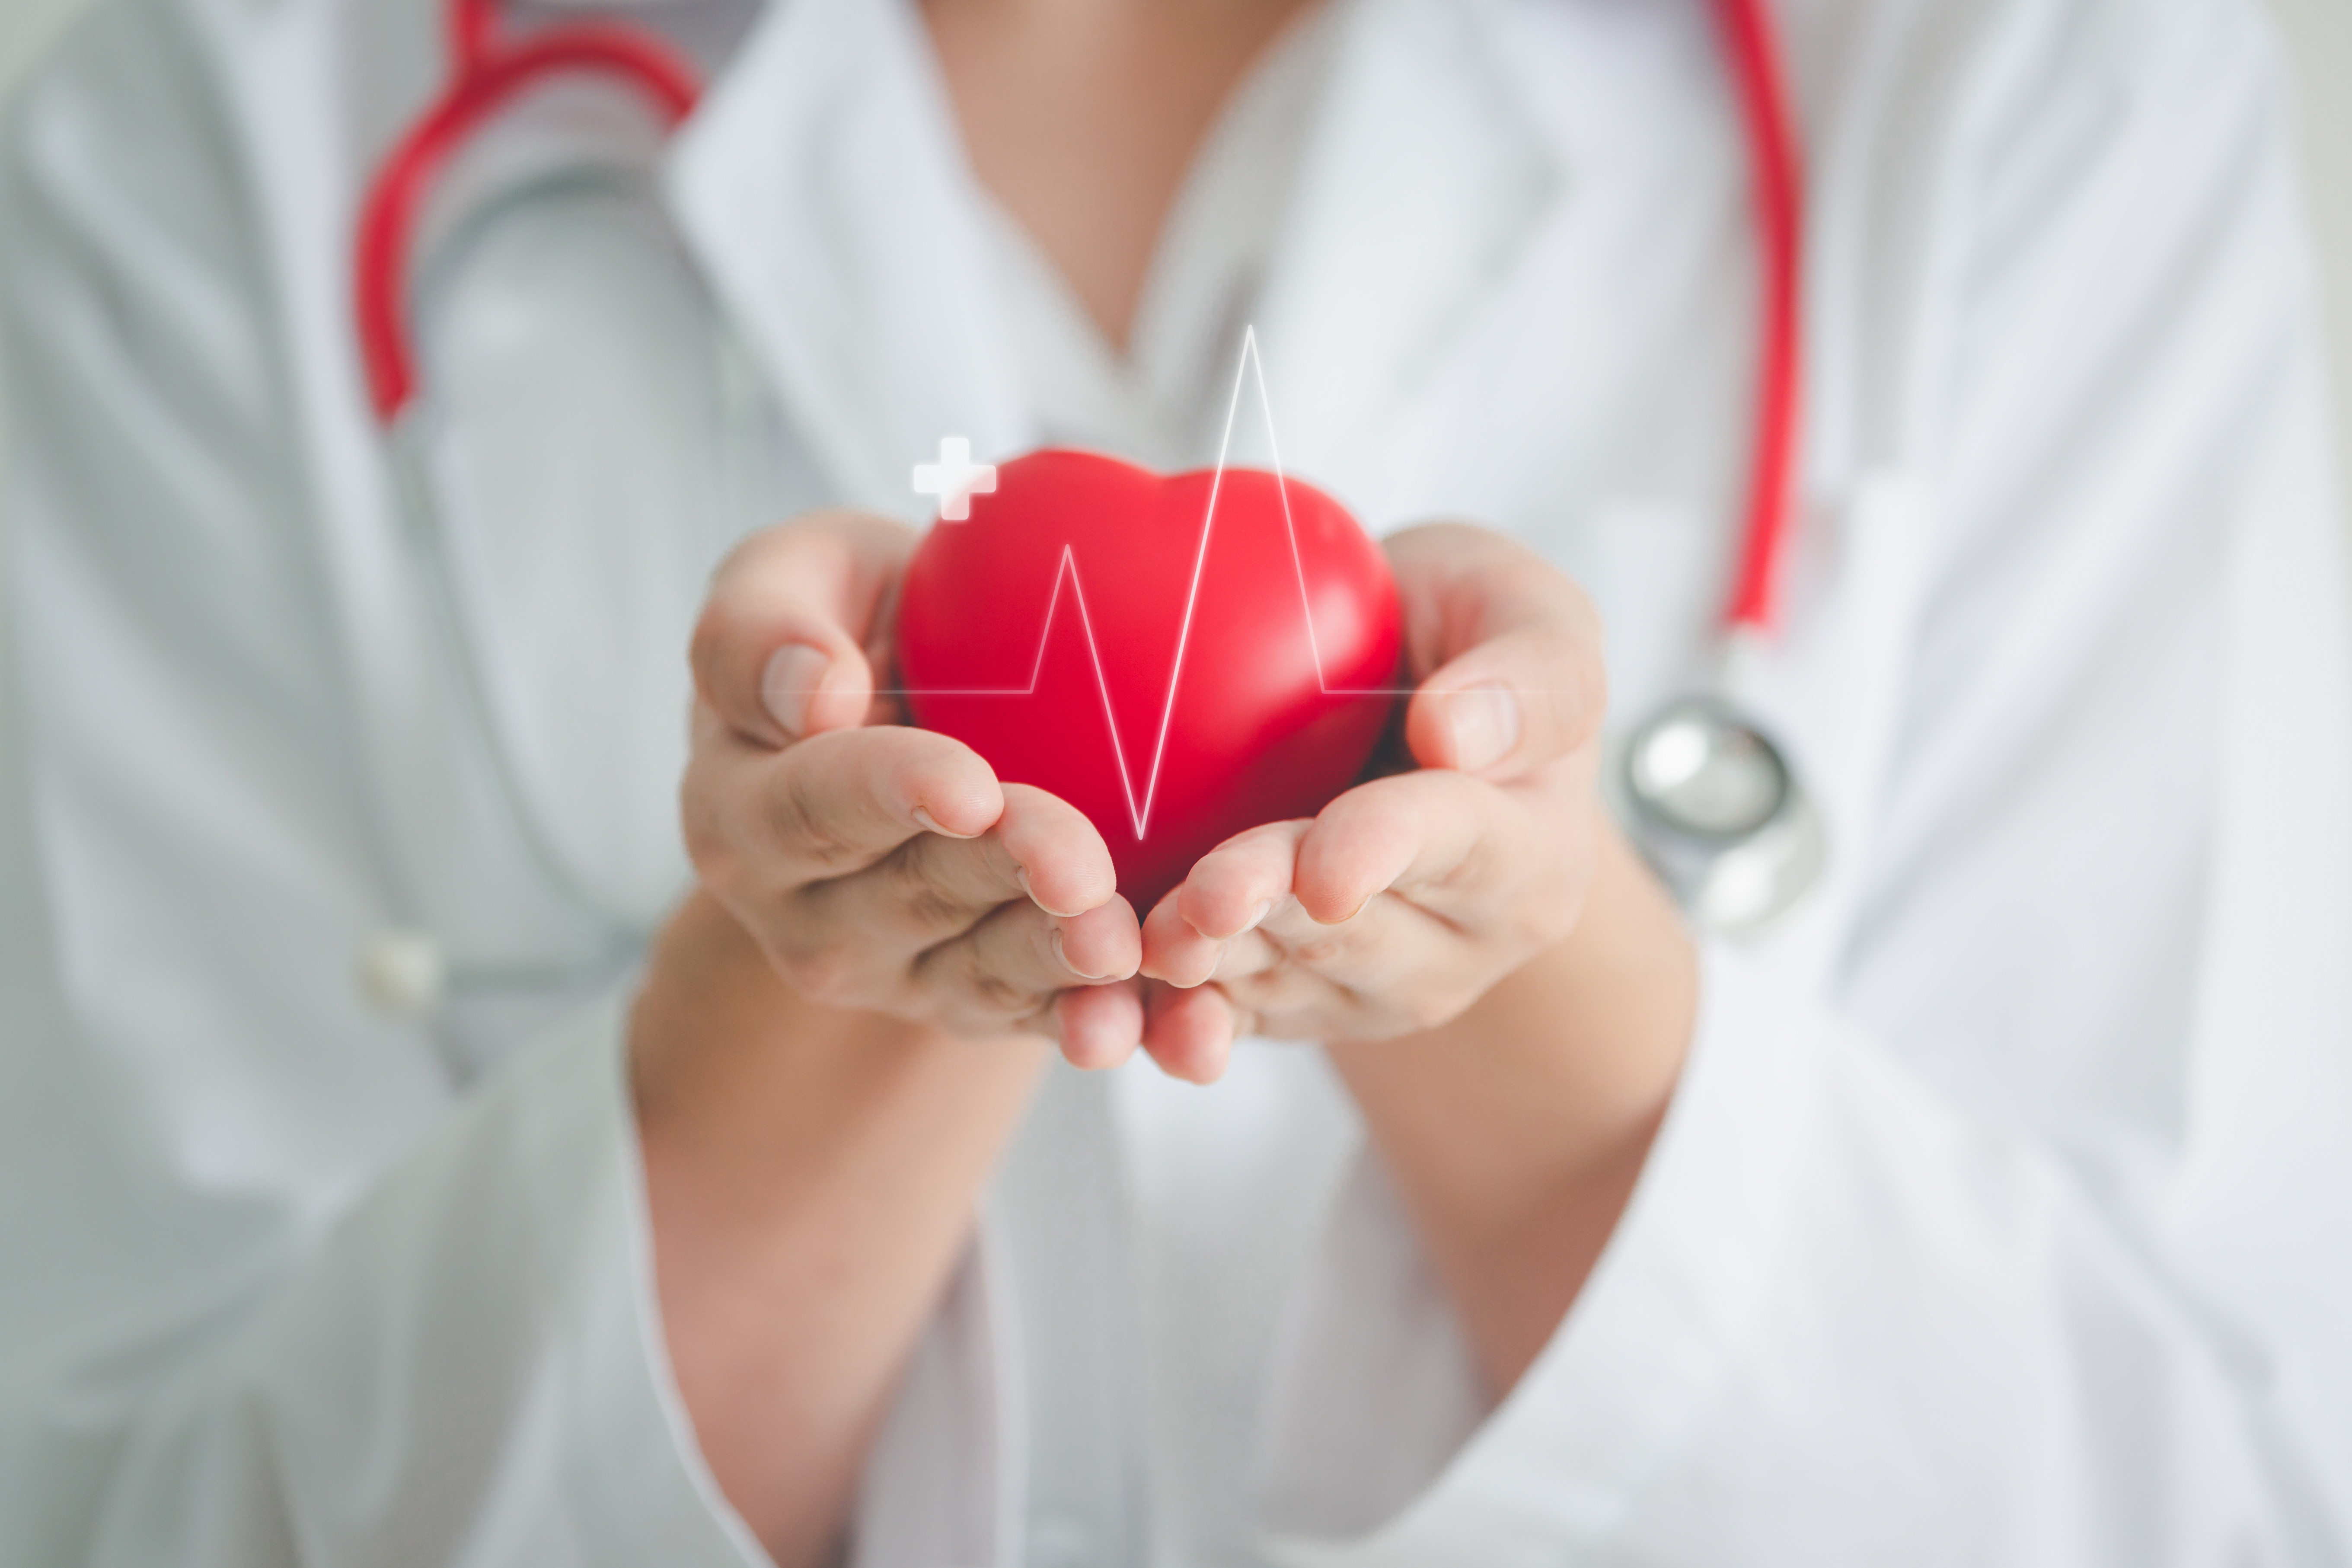 Projeto do HCor concede certificações de excelência em boas práticas clínicas em cardiologia para hospitais do SUS